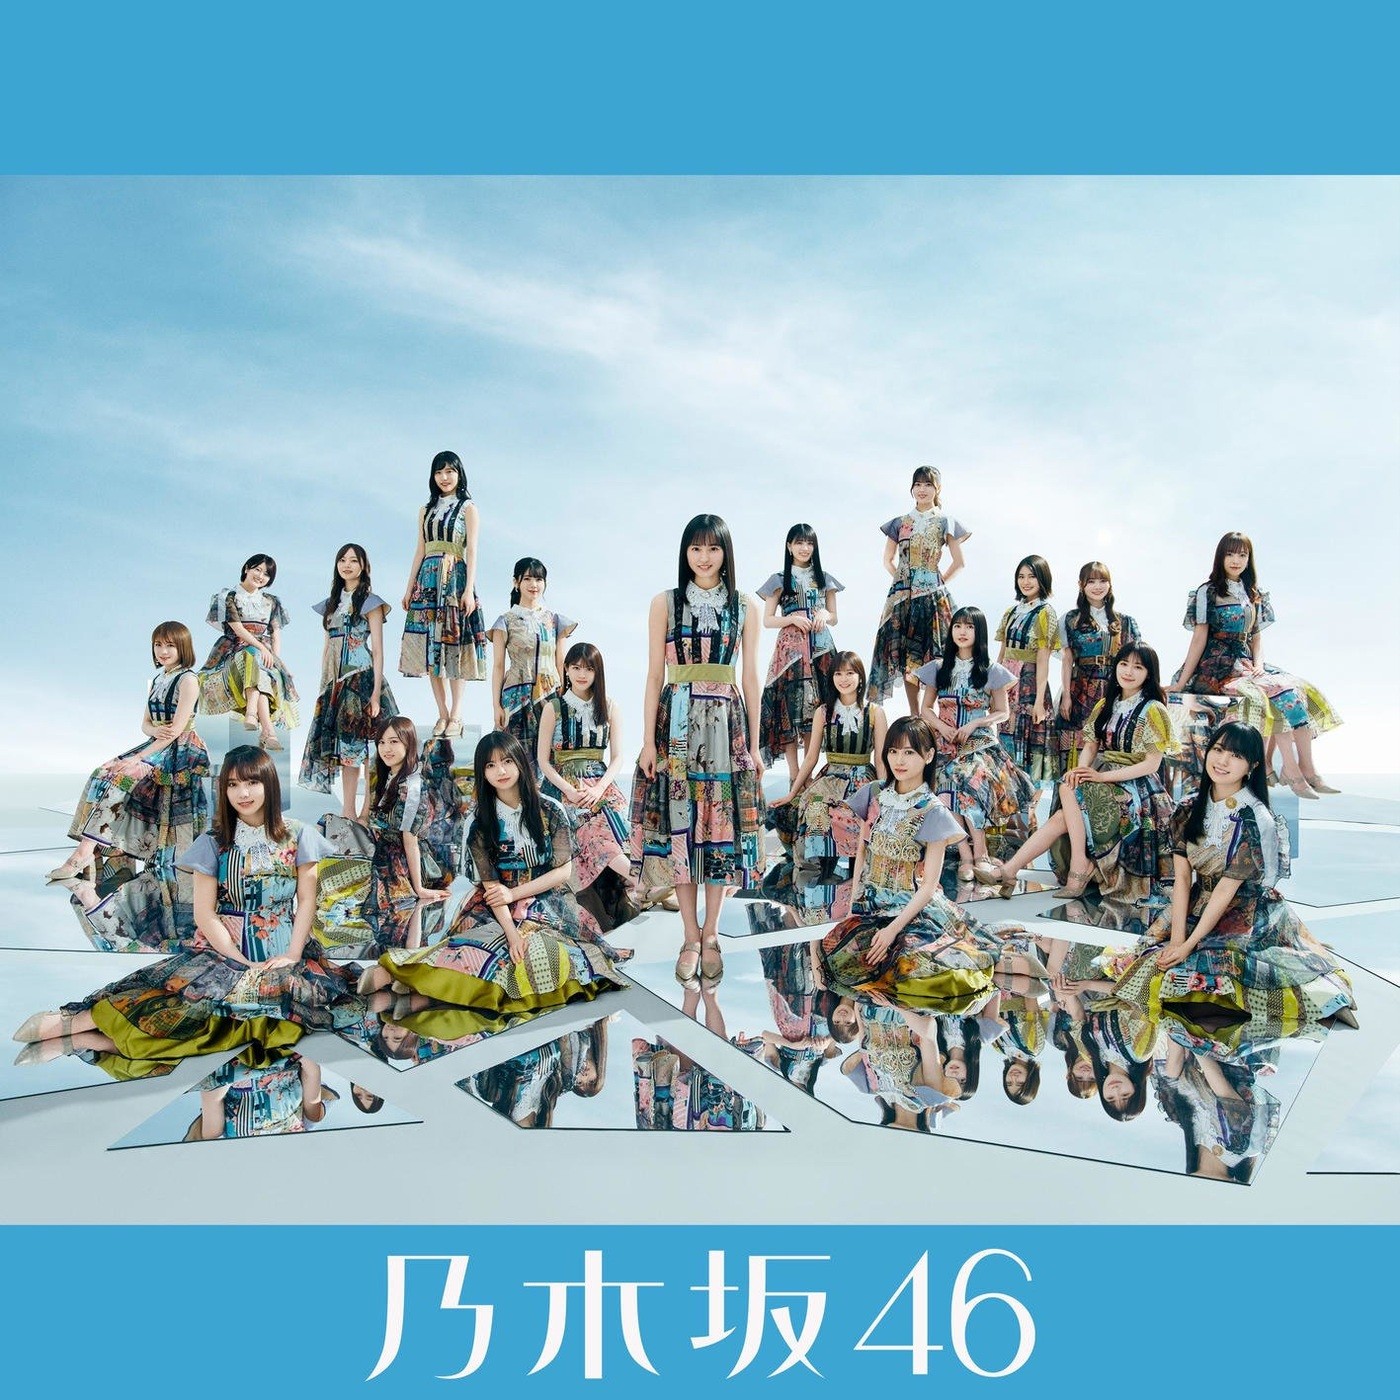 乃木坂46 (Nogizaka46) – ごめんねFingers crossed (Special Edition) [FLAC + MP3 320 / WEB] [2021.06.09]